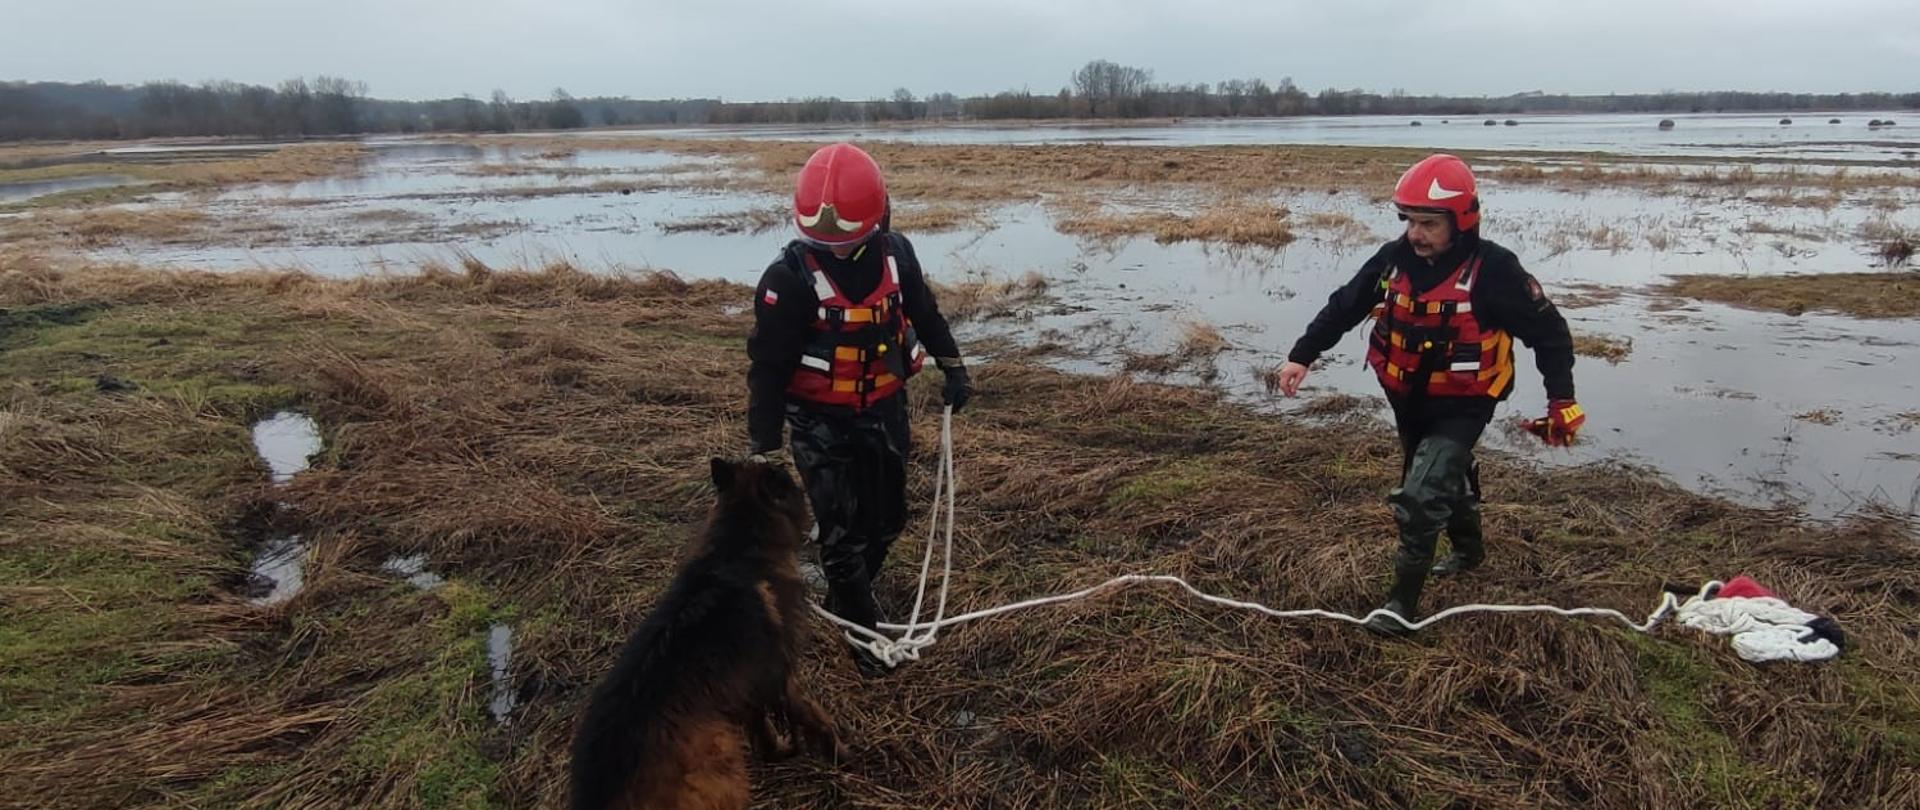 Dwóch strażaków na lądzie wraz z psem na lince. W tle zalane nieużytki rolne